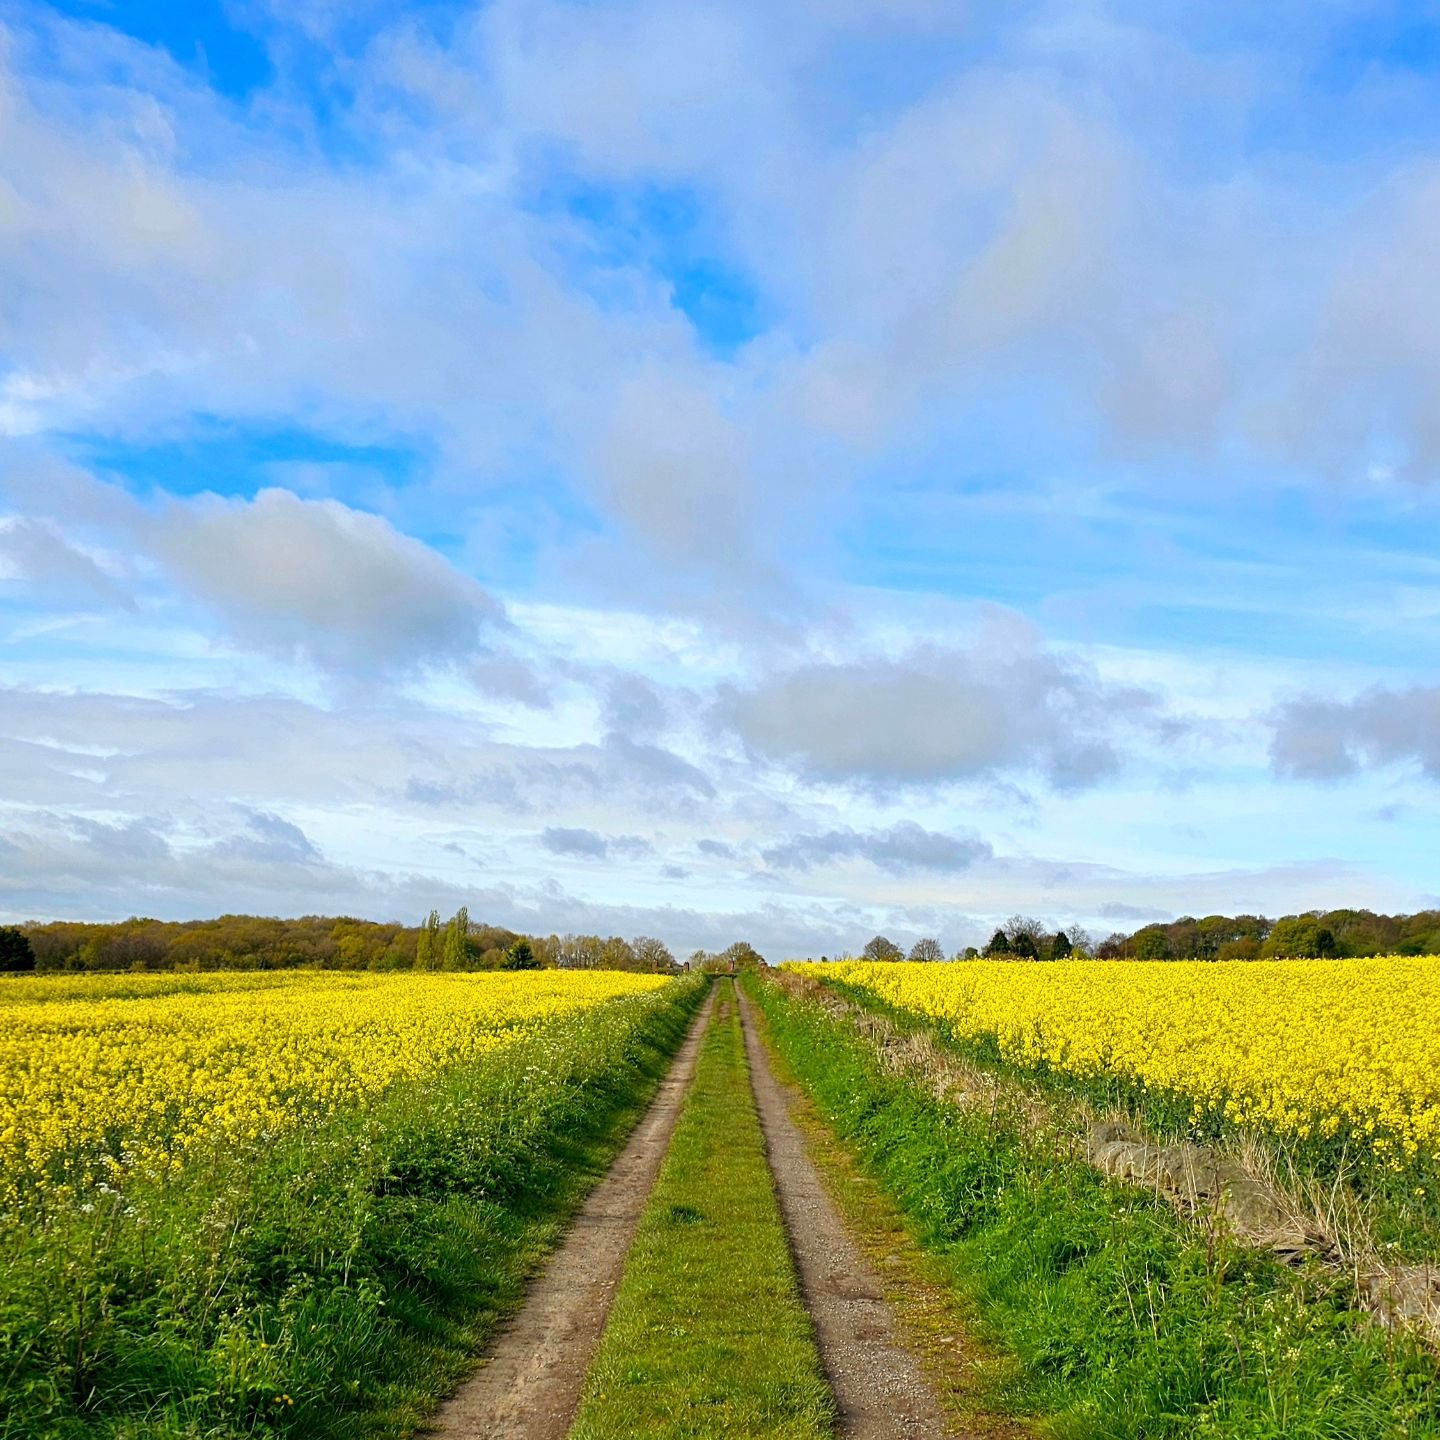 Canola Lane

#rapeseed #canola #derbyshire #yellowflowers